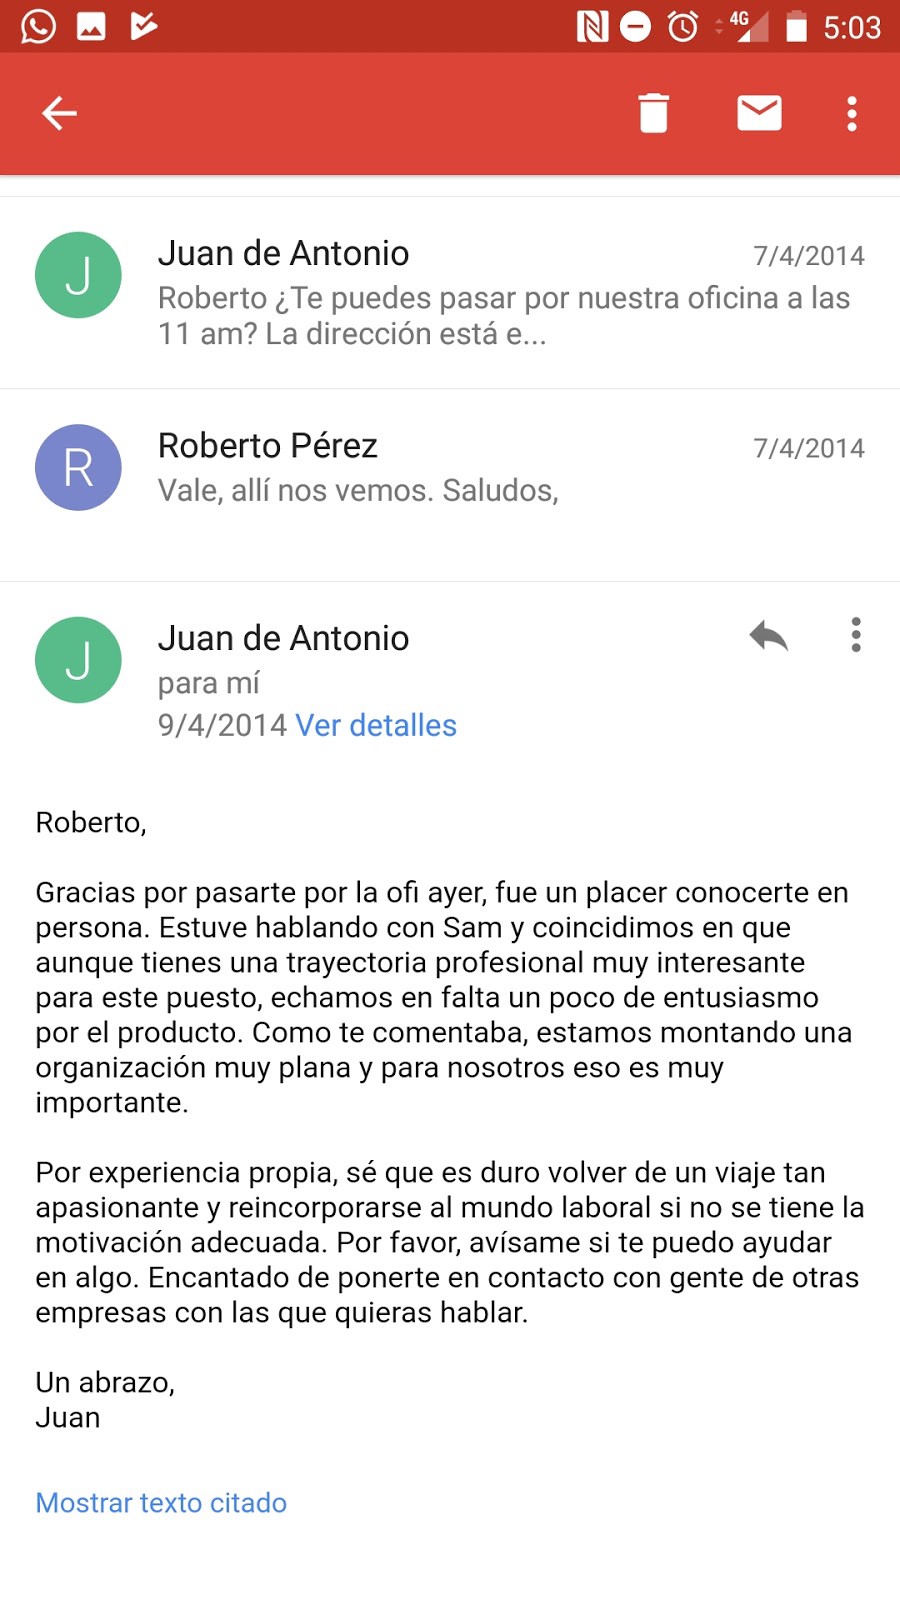 Email between Roberto Perez and Juan de Antonio